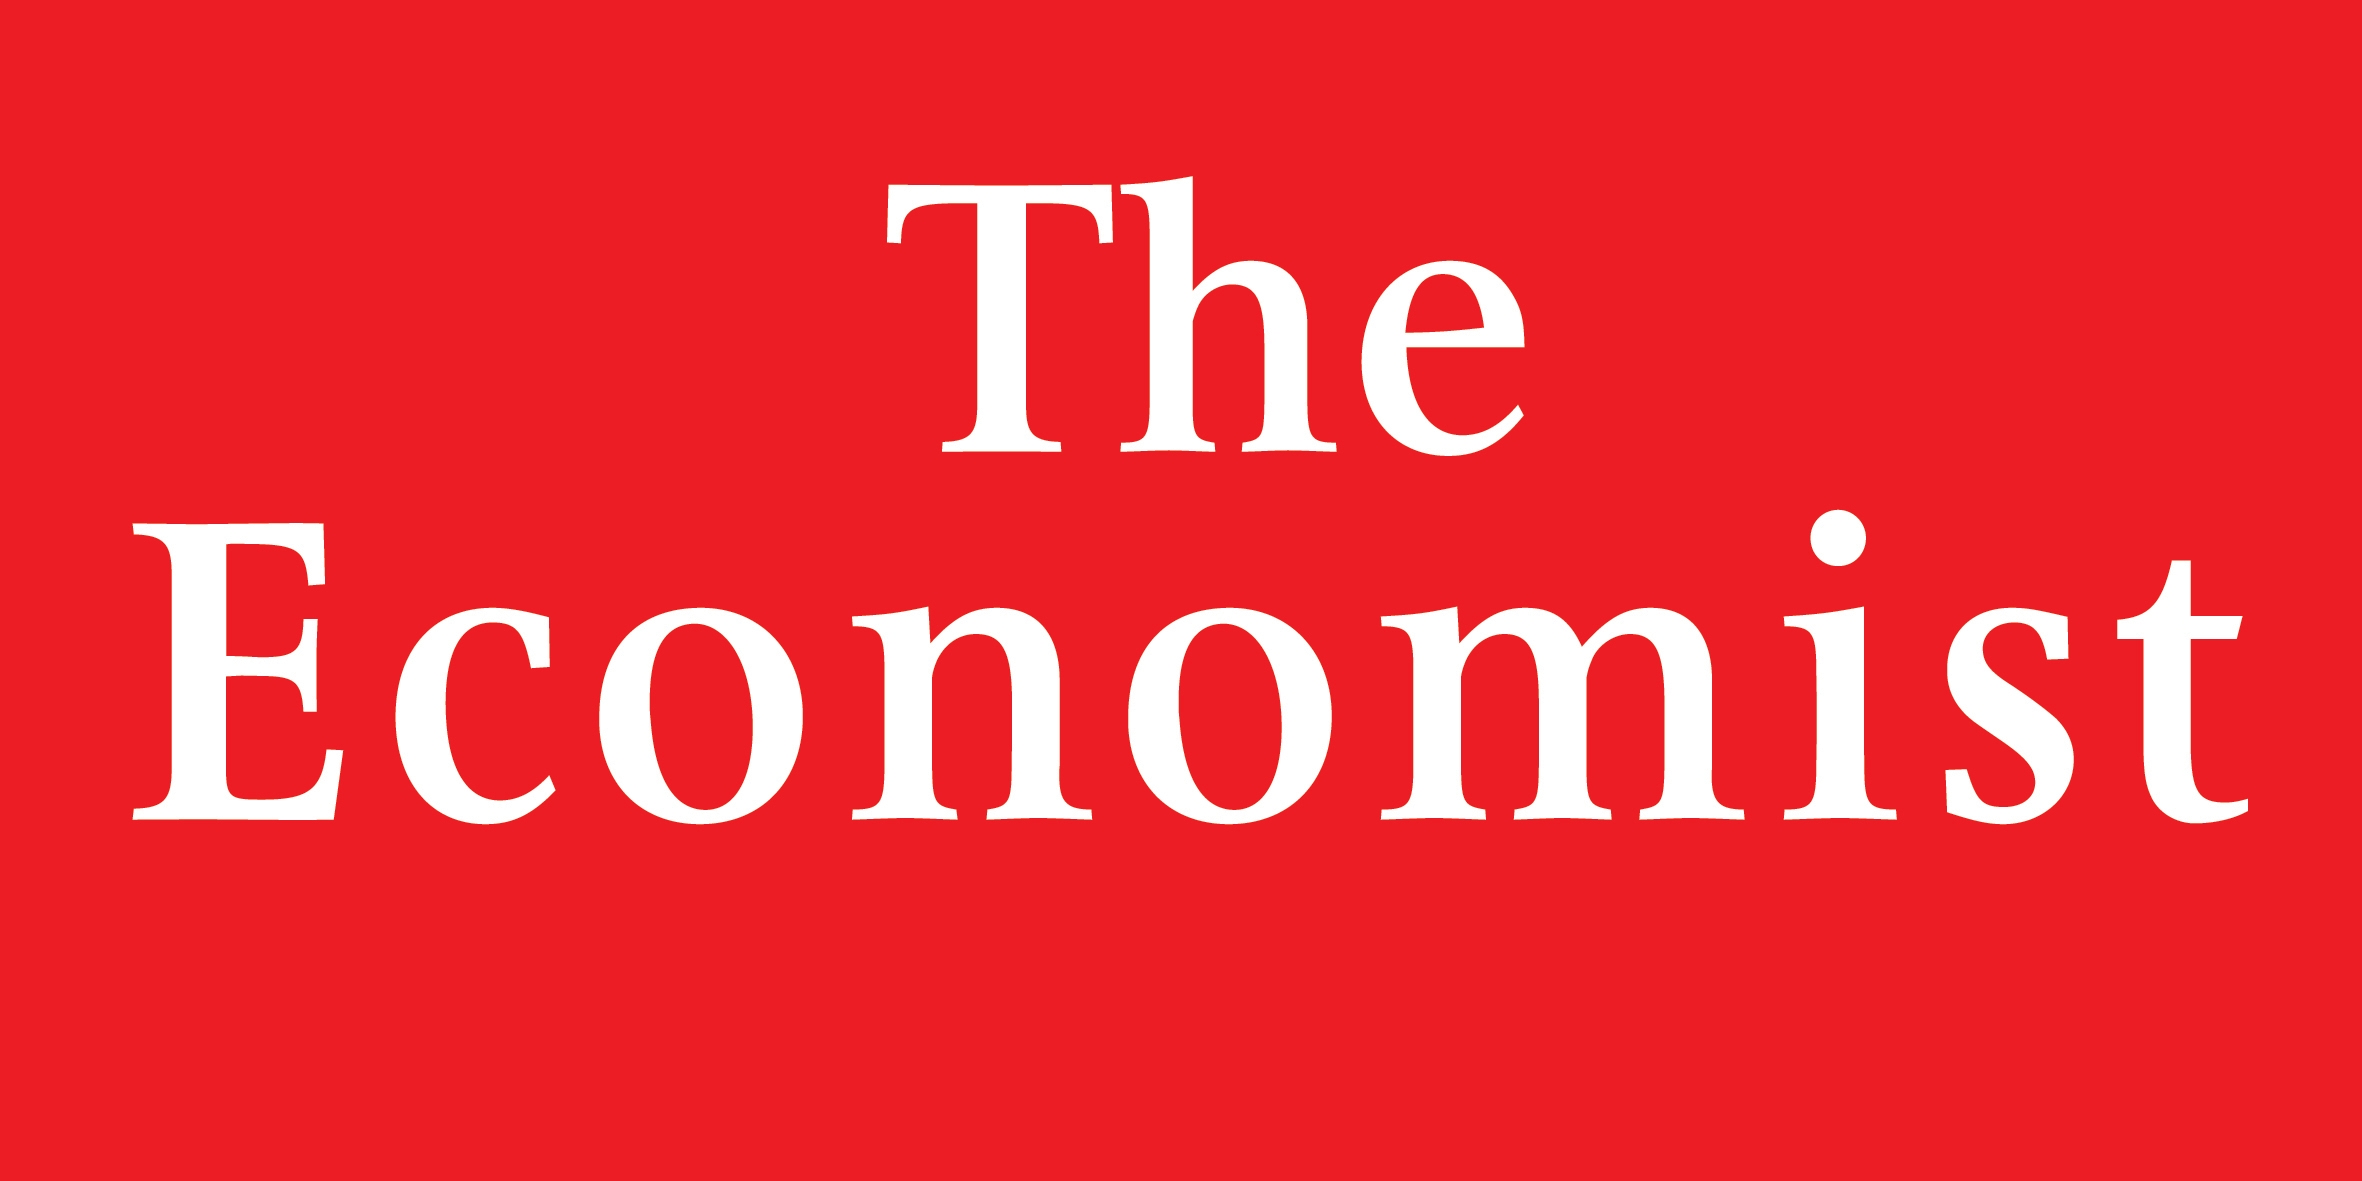 The Economist-ը բացահայտում է Ադրբեջանի և ԵԽ-ի միջեւ կոռուպցիայի վրա 
հիմնված հարաբերությունները 